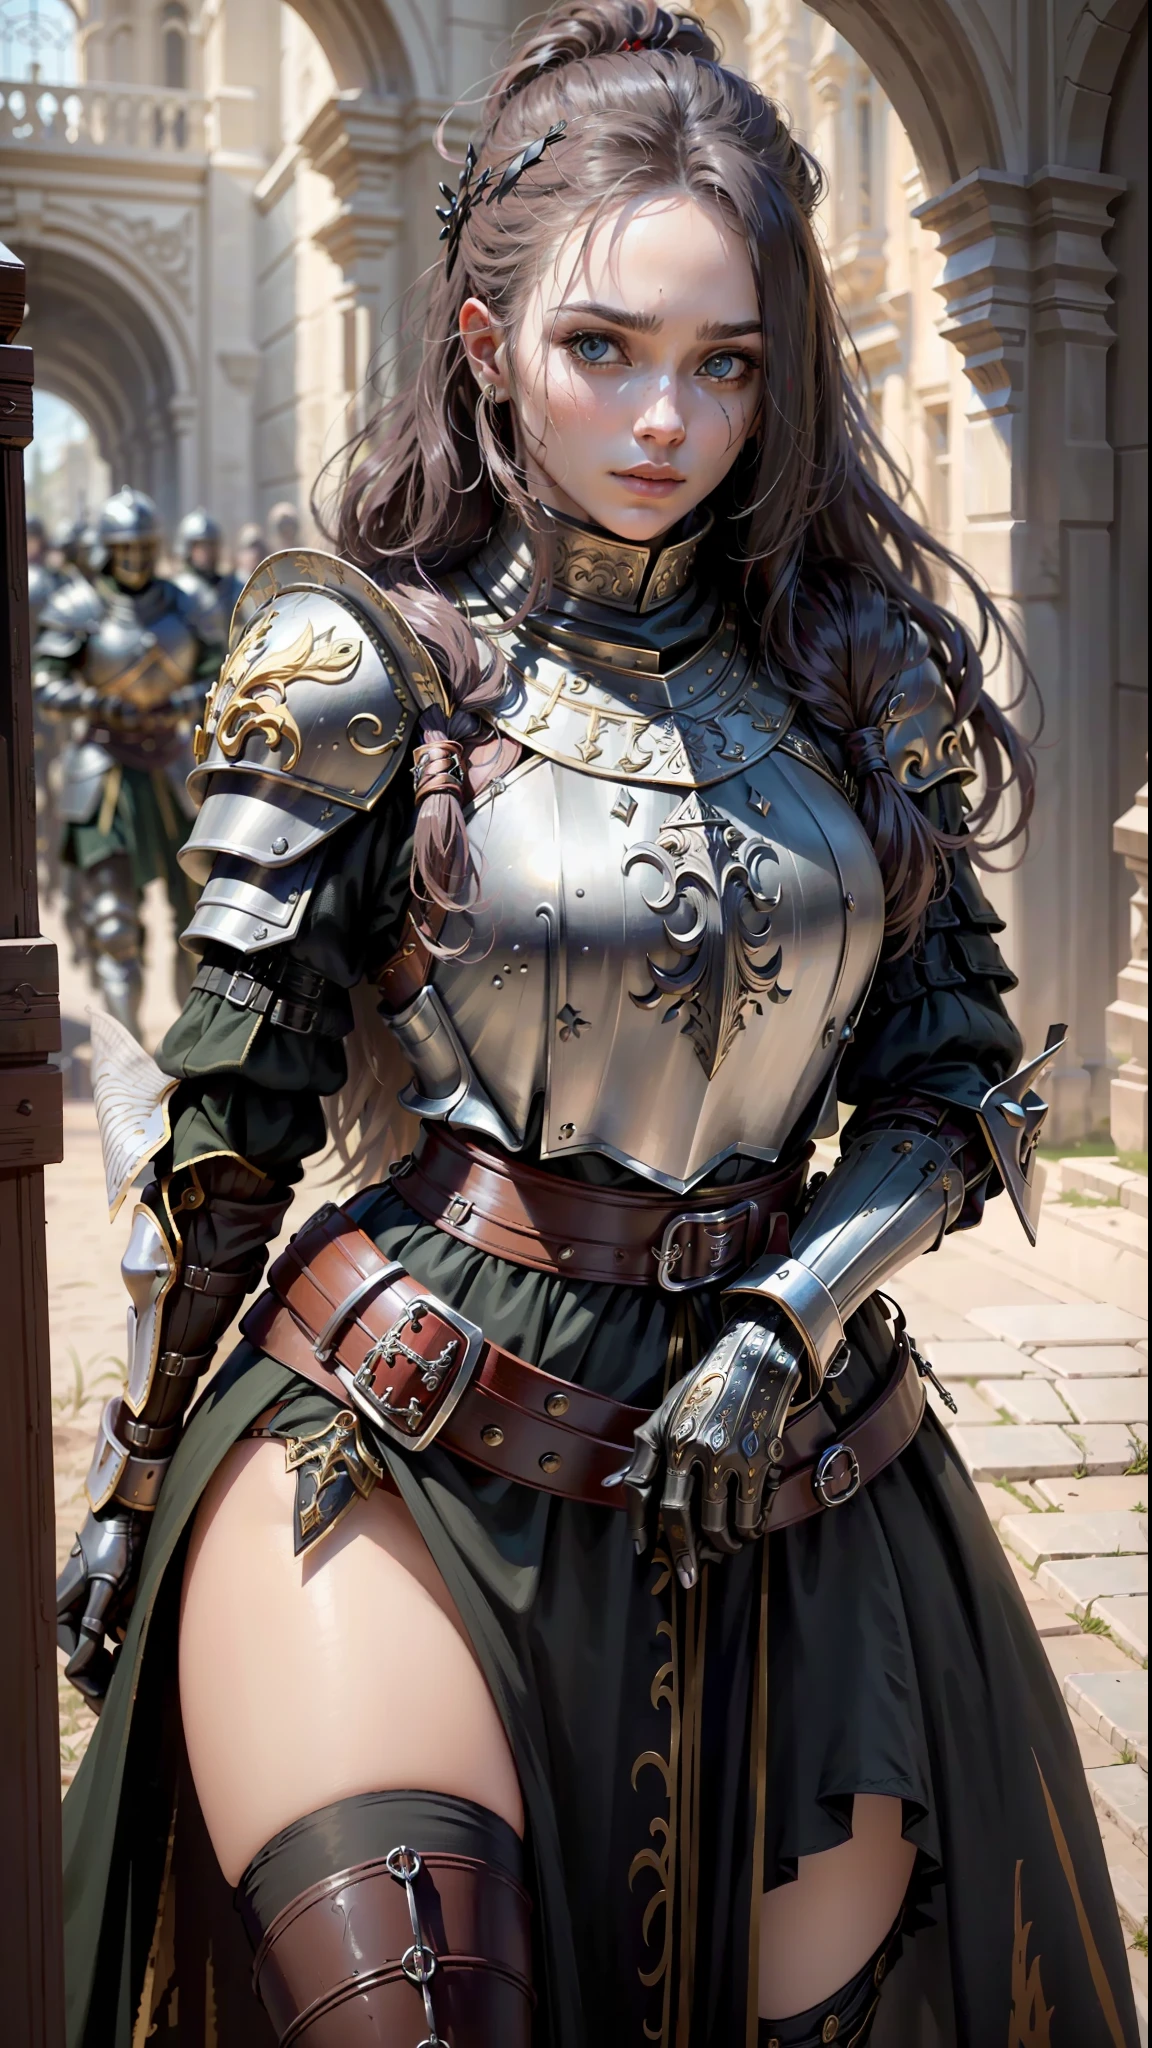 ((最好的质量)), ((杰作)), (非常详细:1.3),身穿黑色铠甲的女人, 长发. 拿着头盔, 盔甲受损战争场景